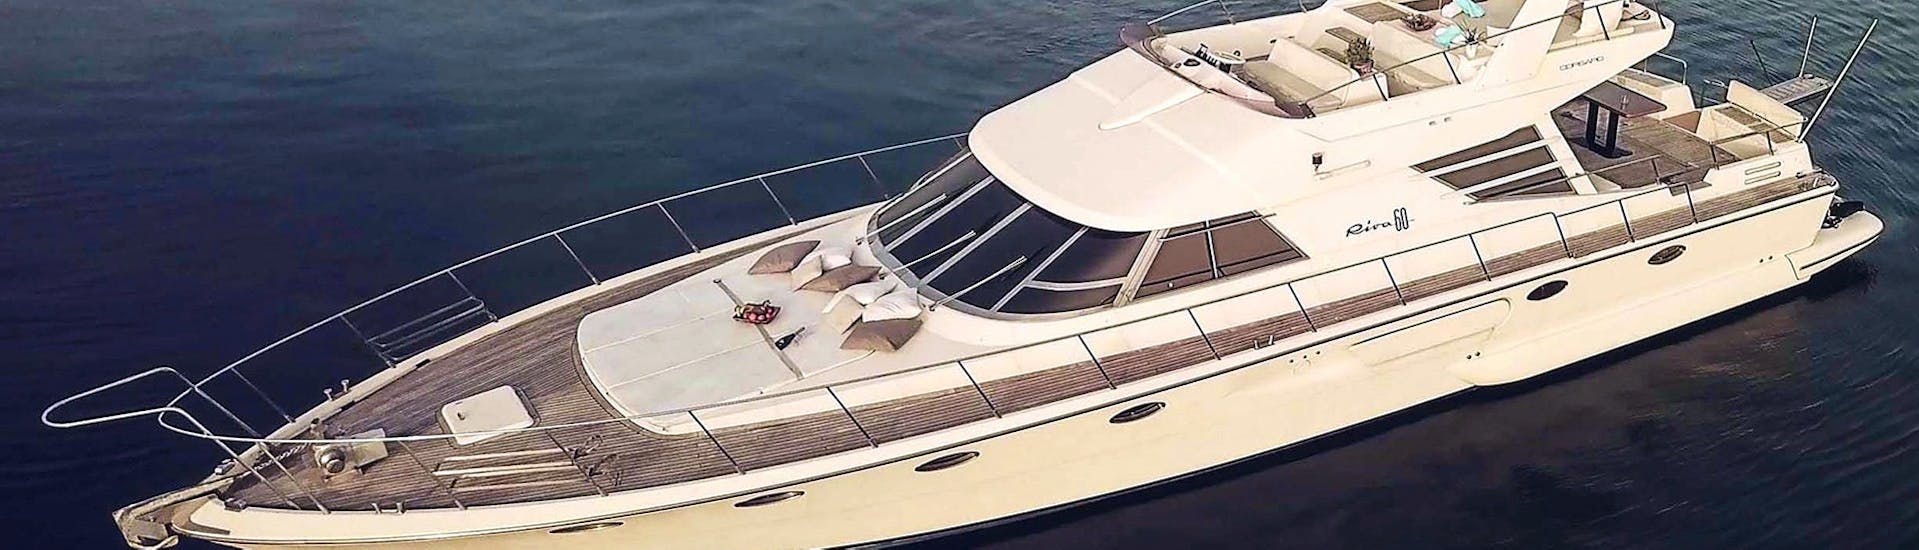 Het luxe jacht INDIGO in de privé luxe jachtreis rond Milos, Kimolos en Polyaigos met Indigo Yacht Milos.